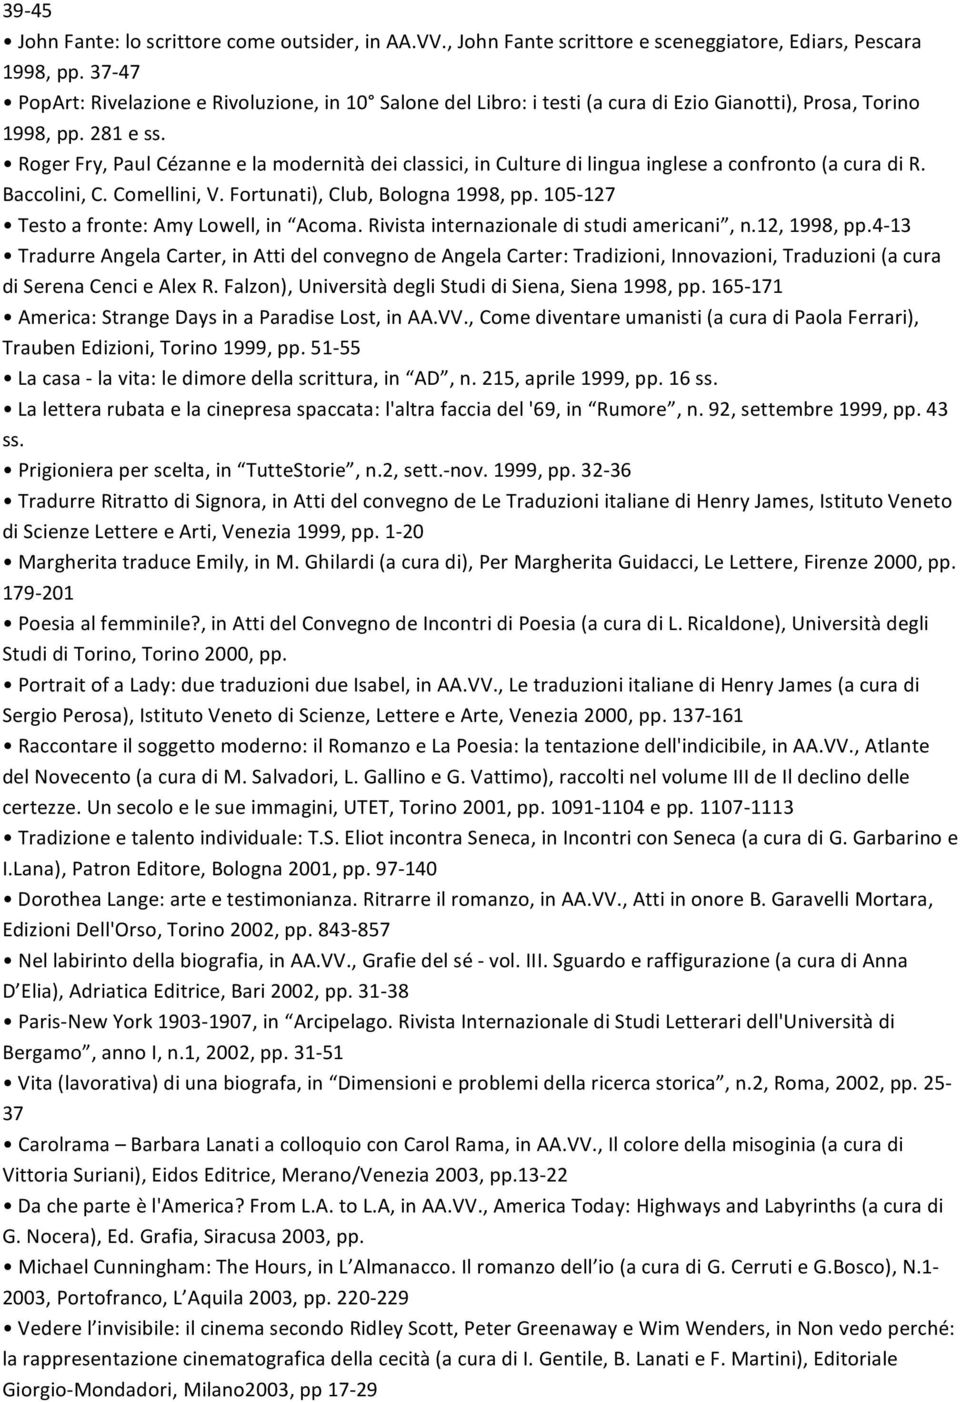 RogerFry,PaulCézanneelamodernitàdeiclassici,inCulturedilinguaingleseaconfronto(acuradiR. Baccolini,C.Comellini,V.Fortunati),Club,Bologna1998,pp.105 127 Testoafronte:AmyLowell,in Acoma.